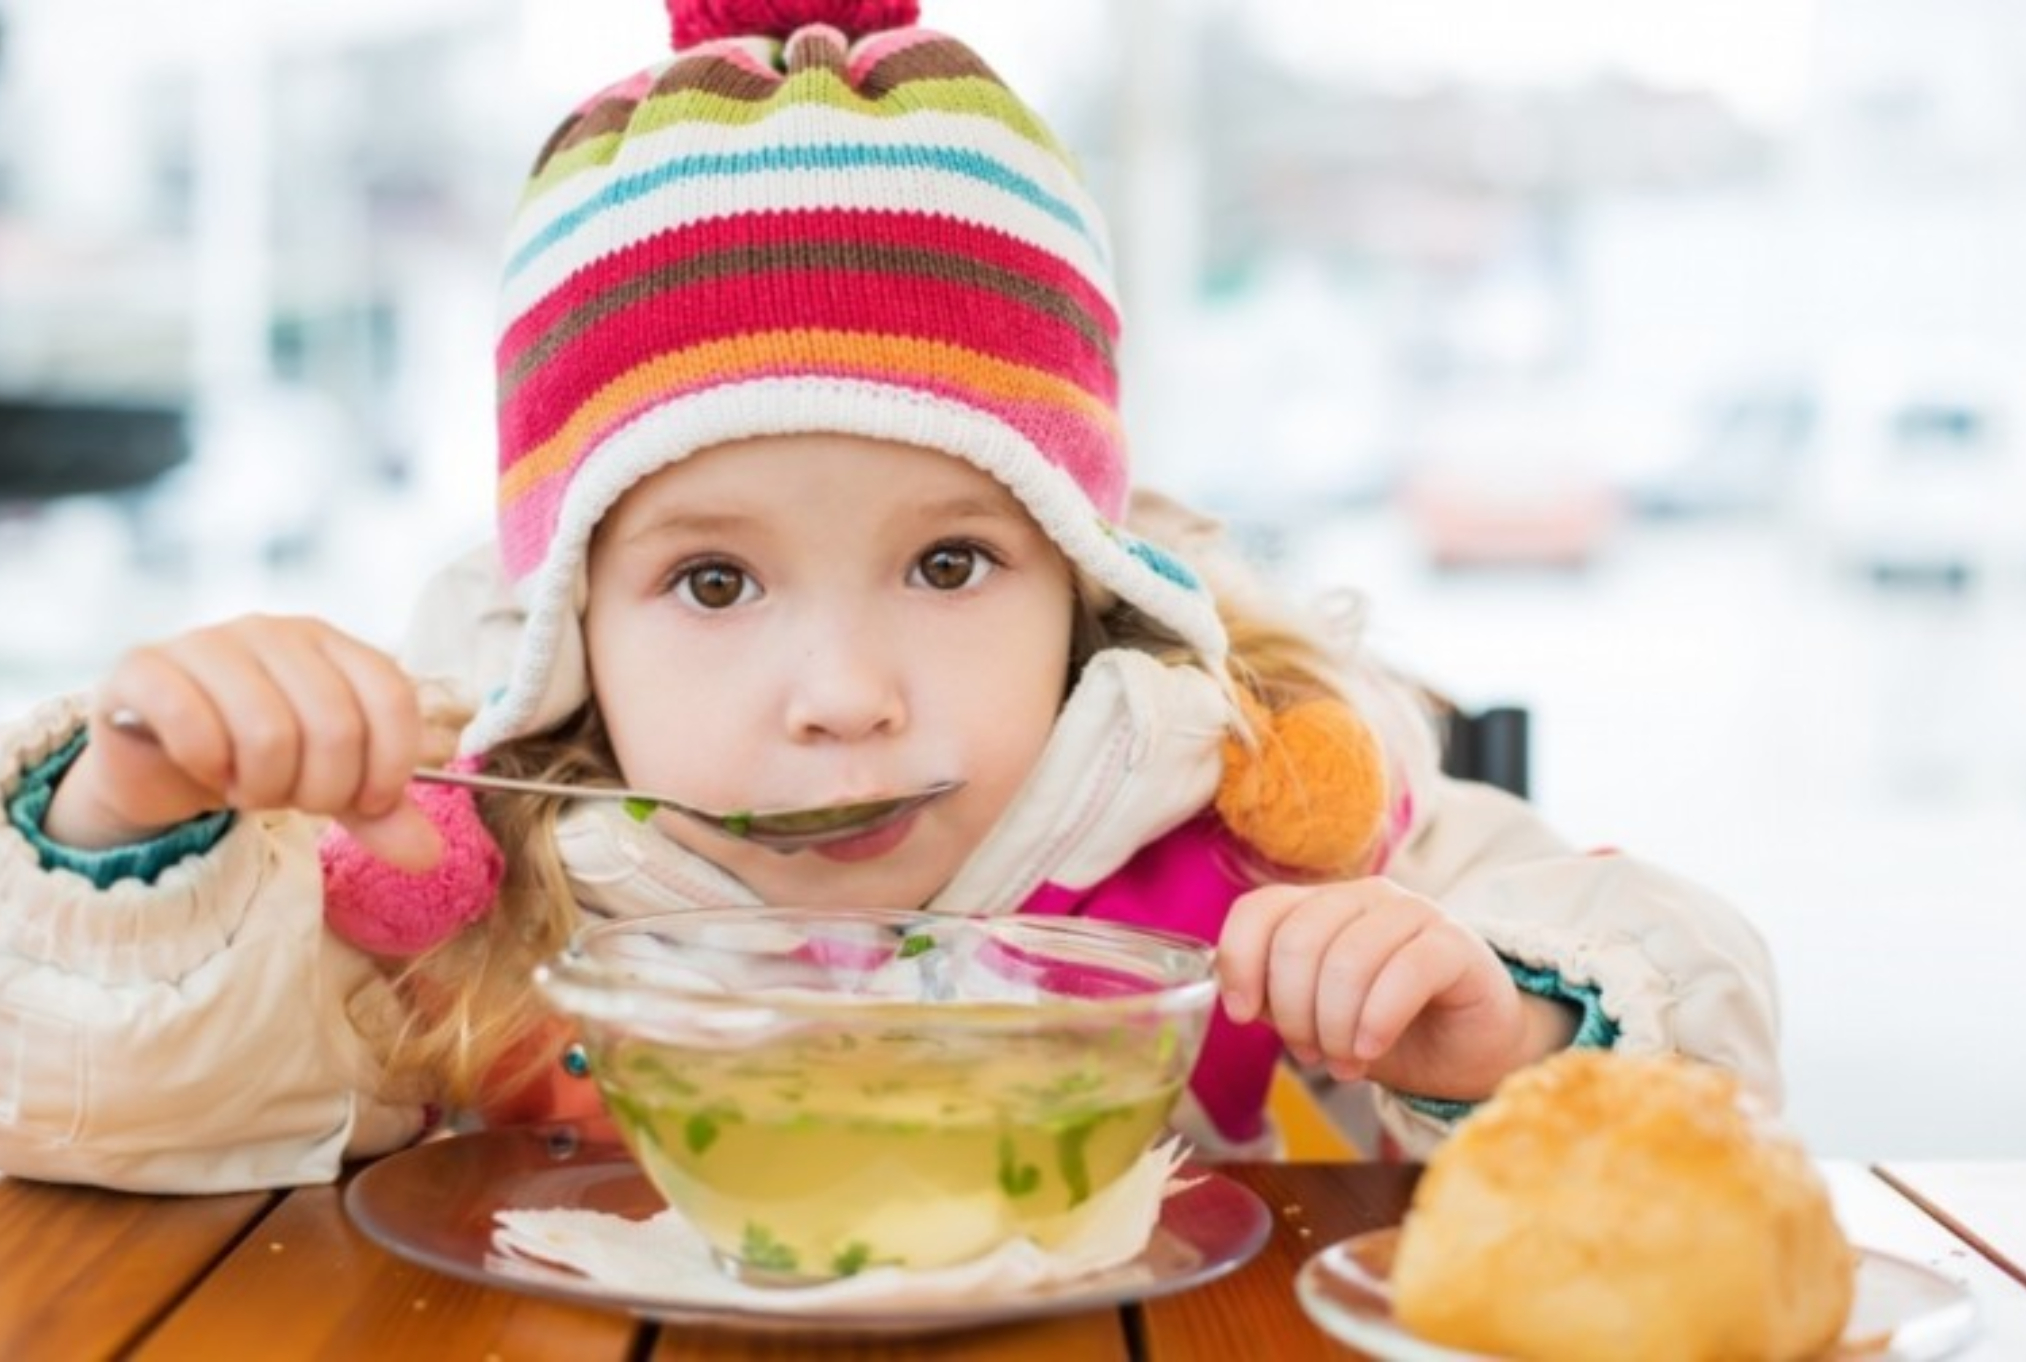 Παιδικές ιώσεις: Βήχας πυρετός και γαστρεντερίτιδα – Ποια είναι η σωστή διατροφή για τα παιδιά όταν περνούν μία ίωση